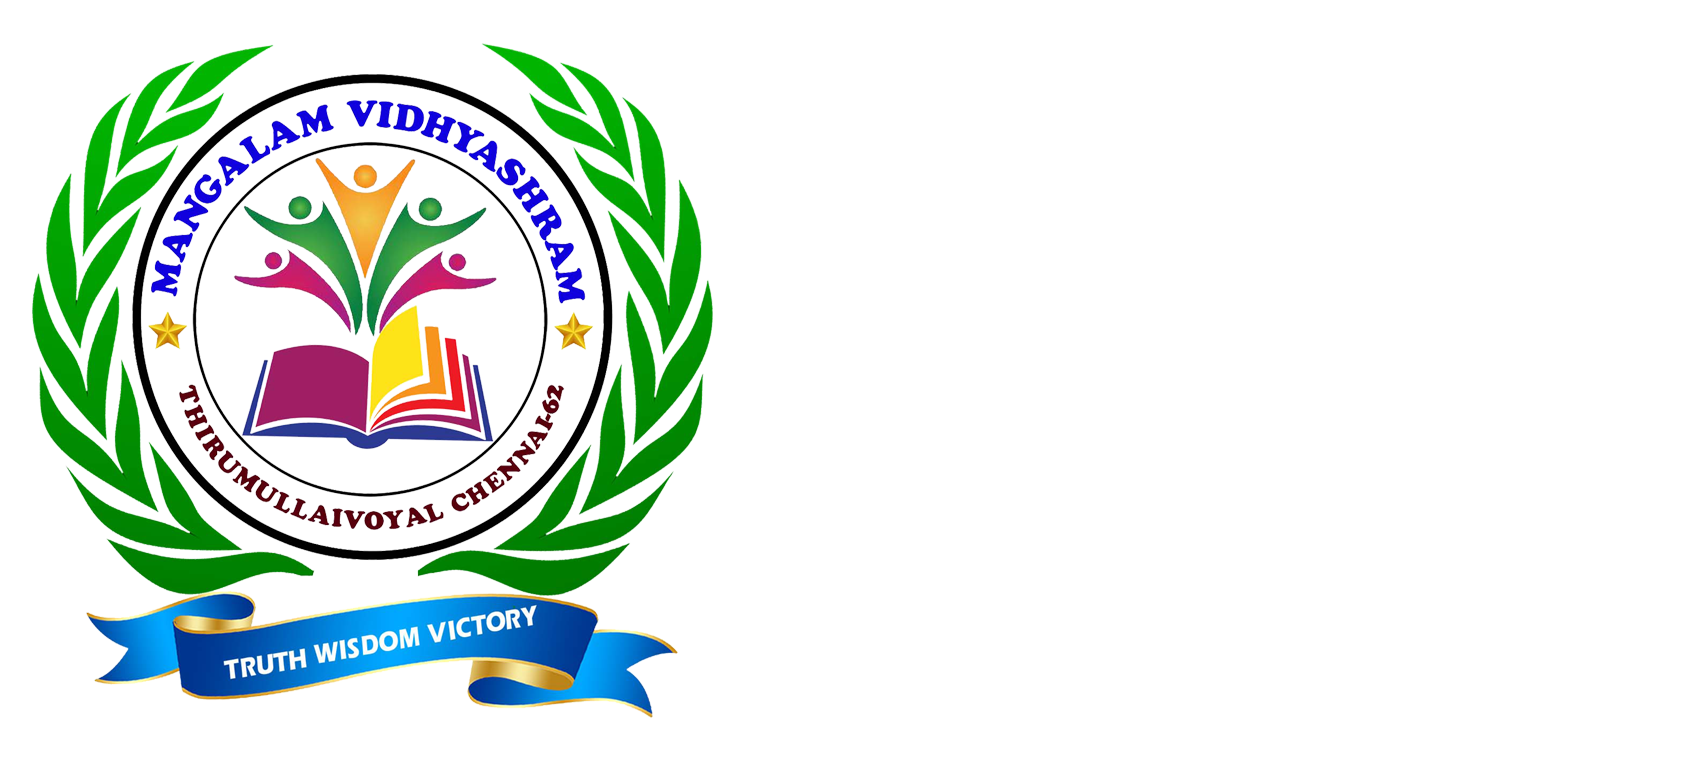 Mangalam Vidhyashram in Thirumullaivoyal Chennai Tamilnadu